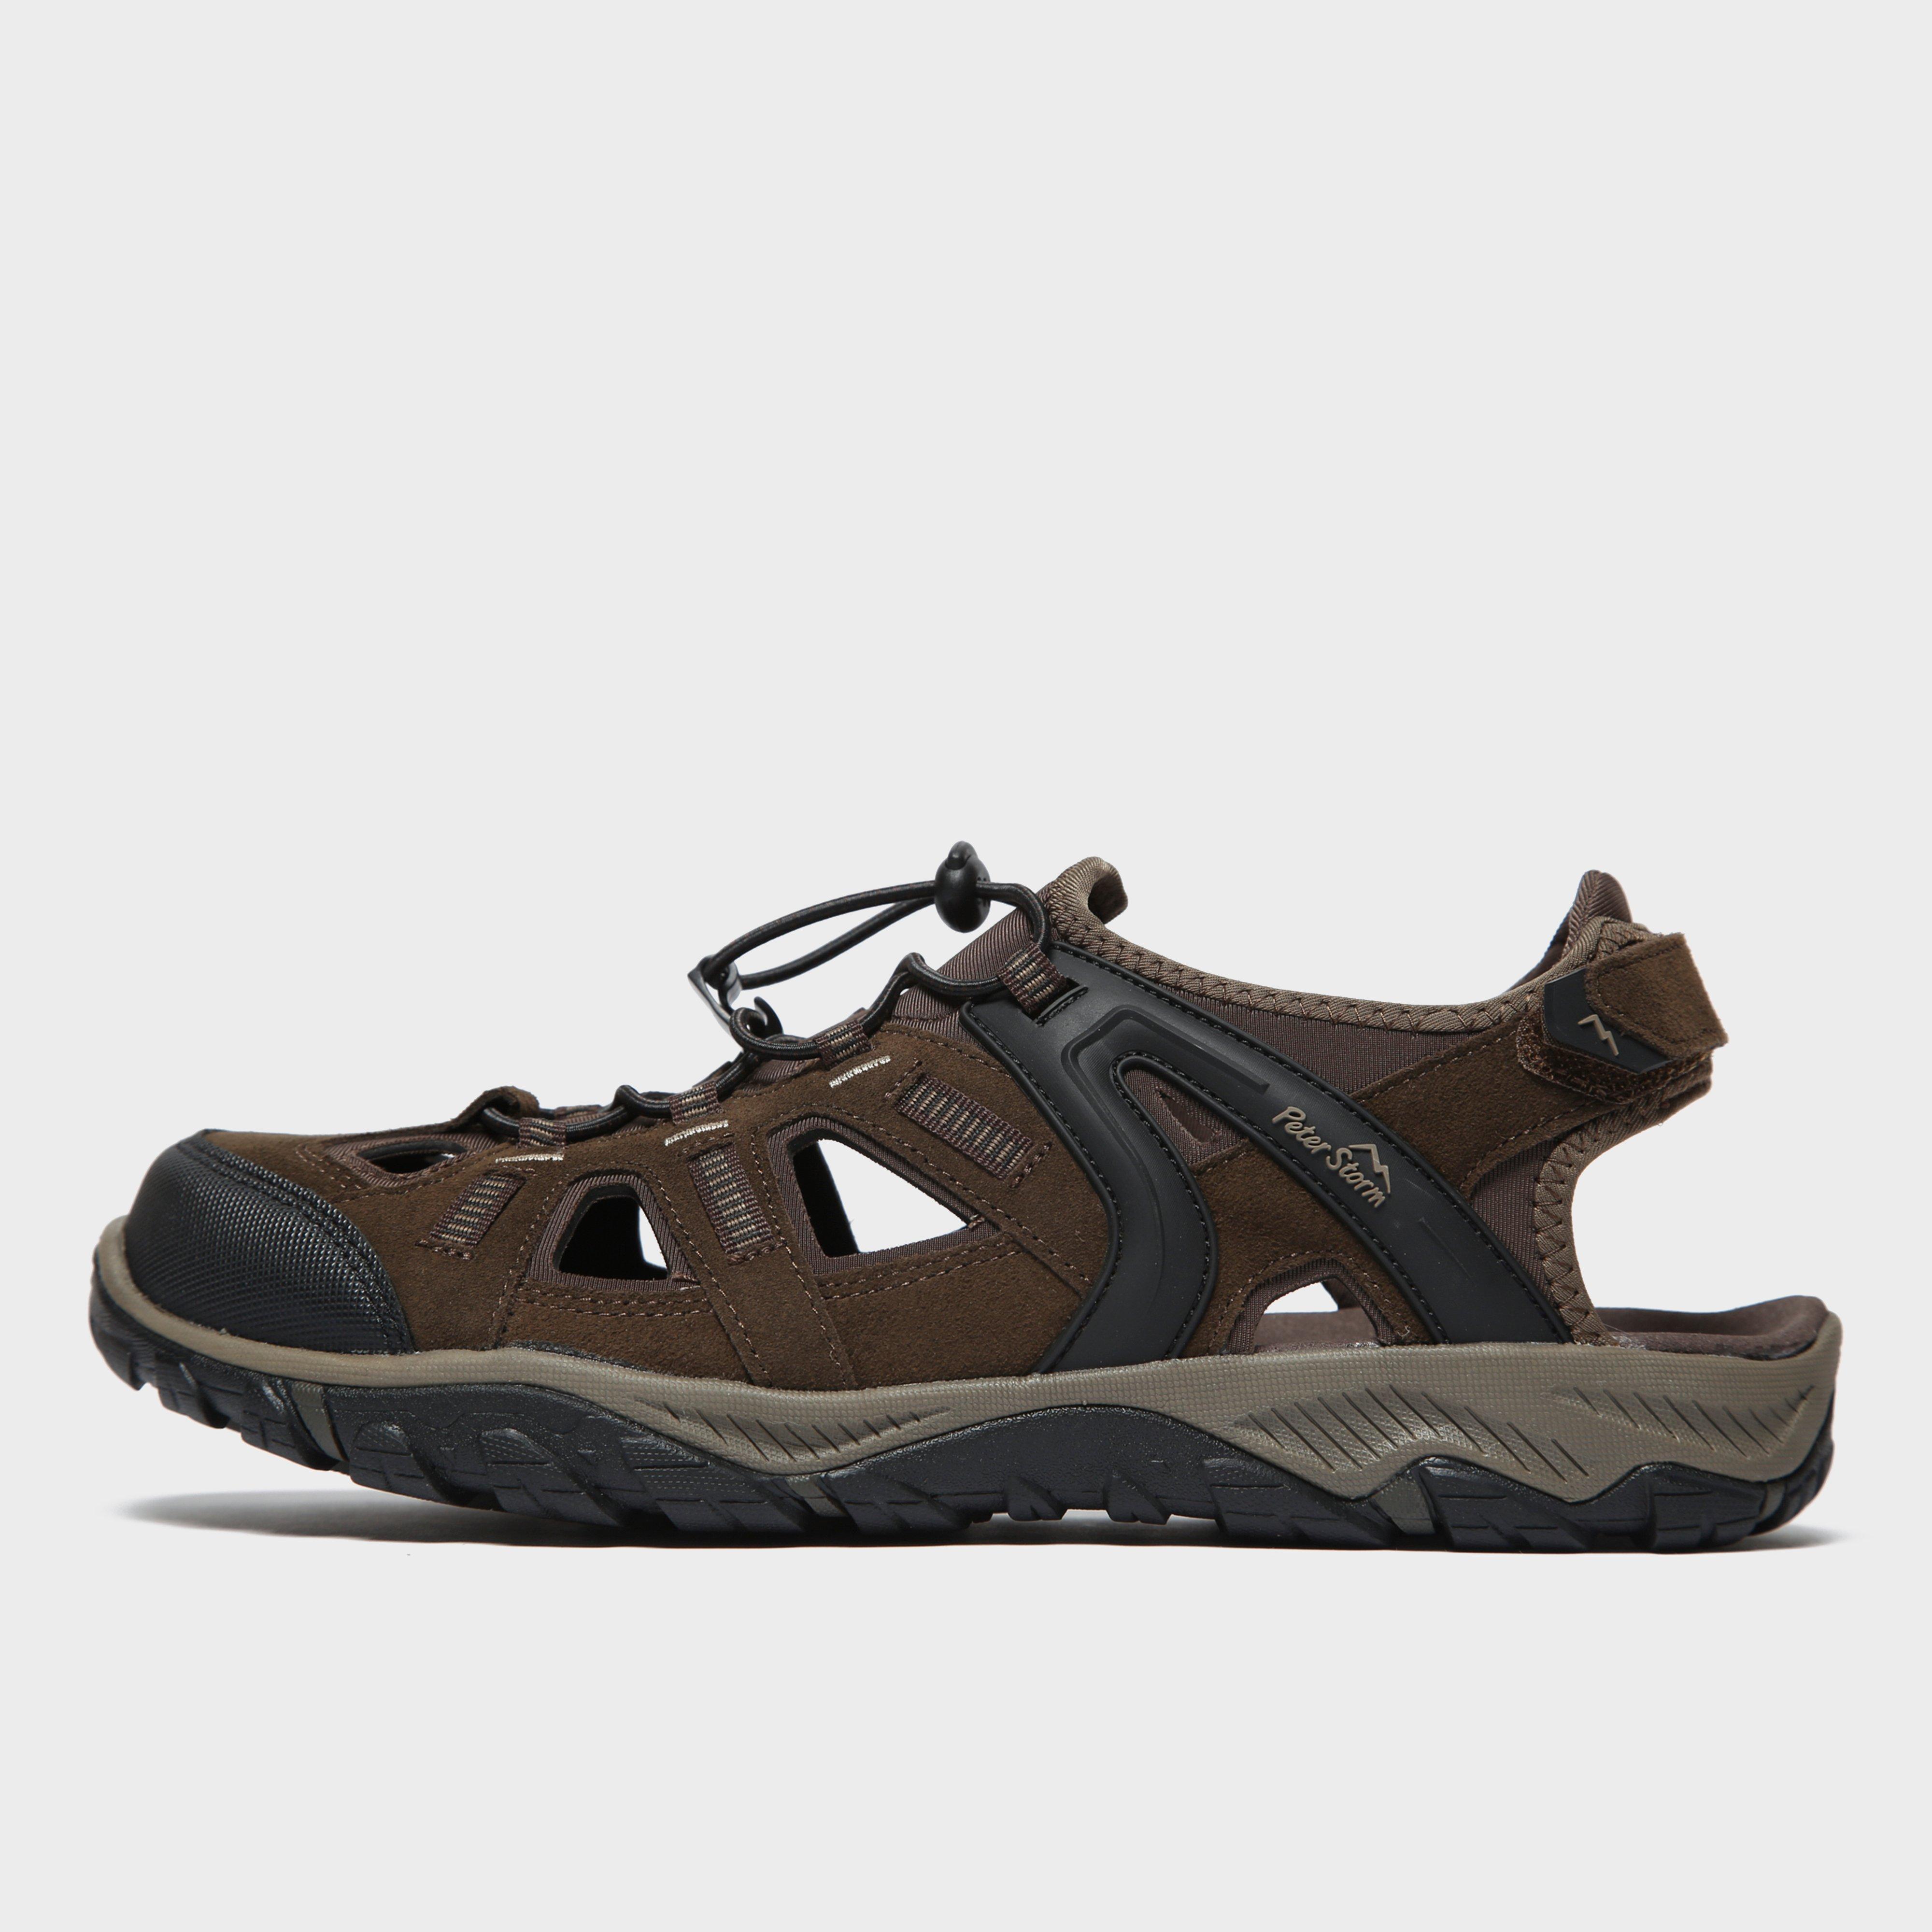 Peter Storm Mens Solva Walking Sandals - Brown/brn  Brown/brn